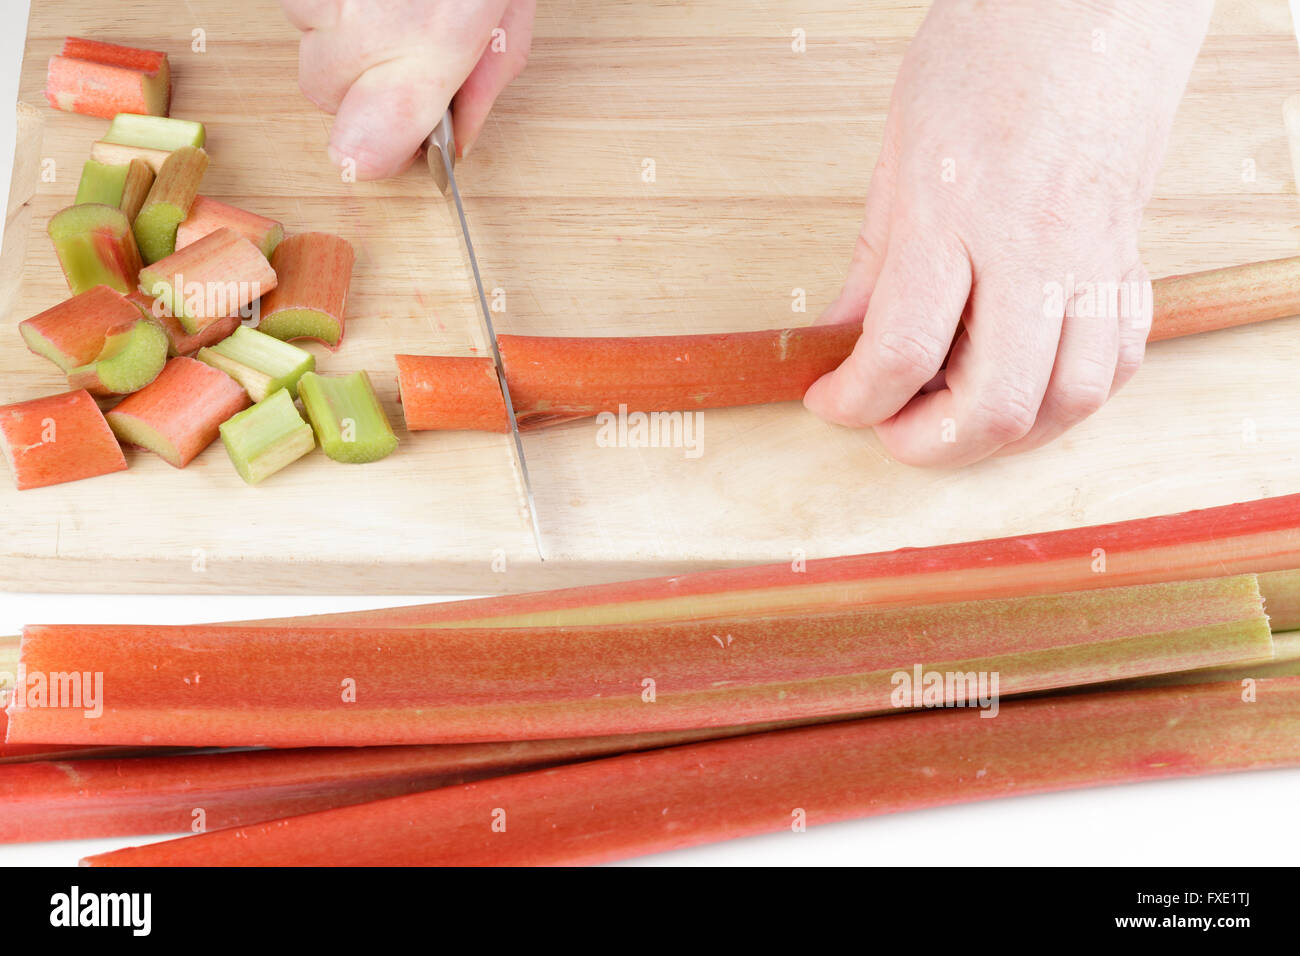 La rhubarbe couper les mains dans la cuisine Banque D'Images